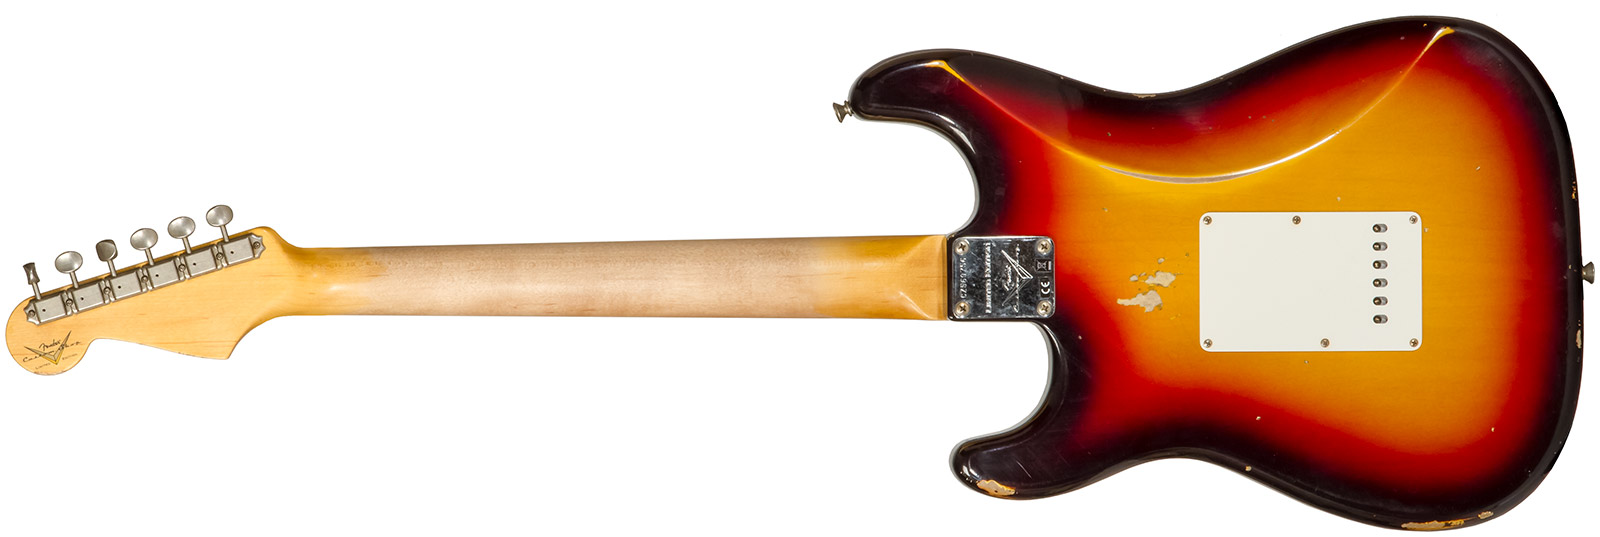 Fender Custom Shop Strat Late 1964 3s Trem Rw #cz569756 - Relic Target 3-color Sunburst - E-Gitarre in Str-Form - Variation 1